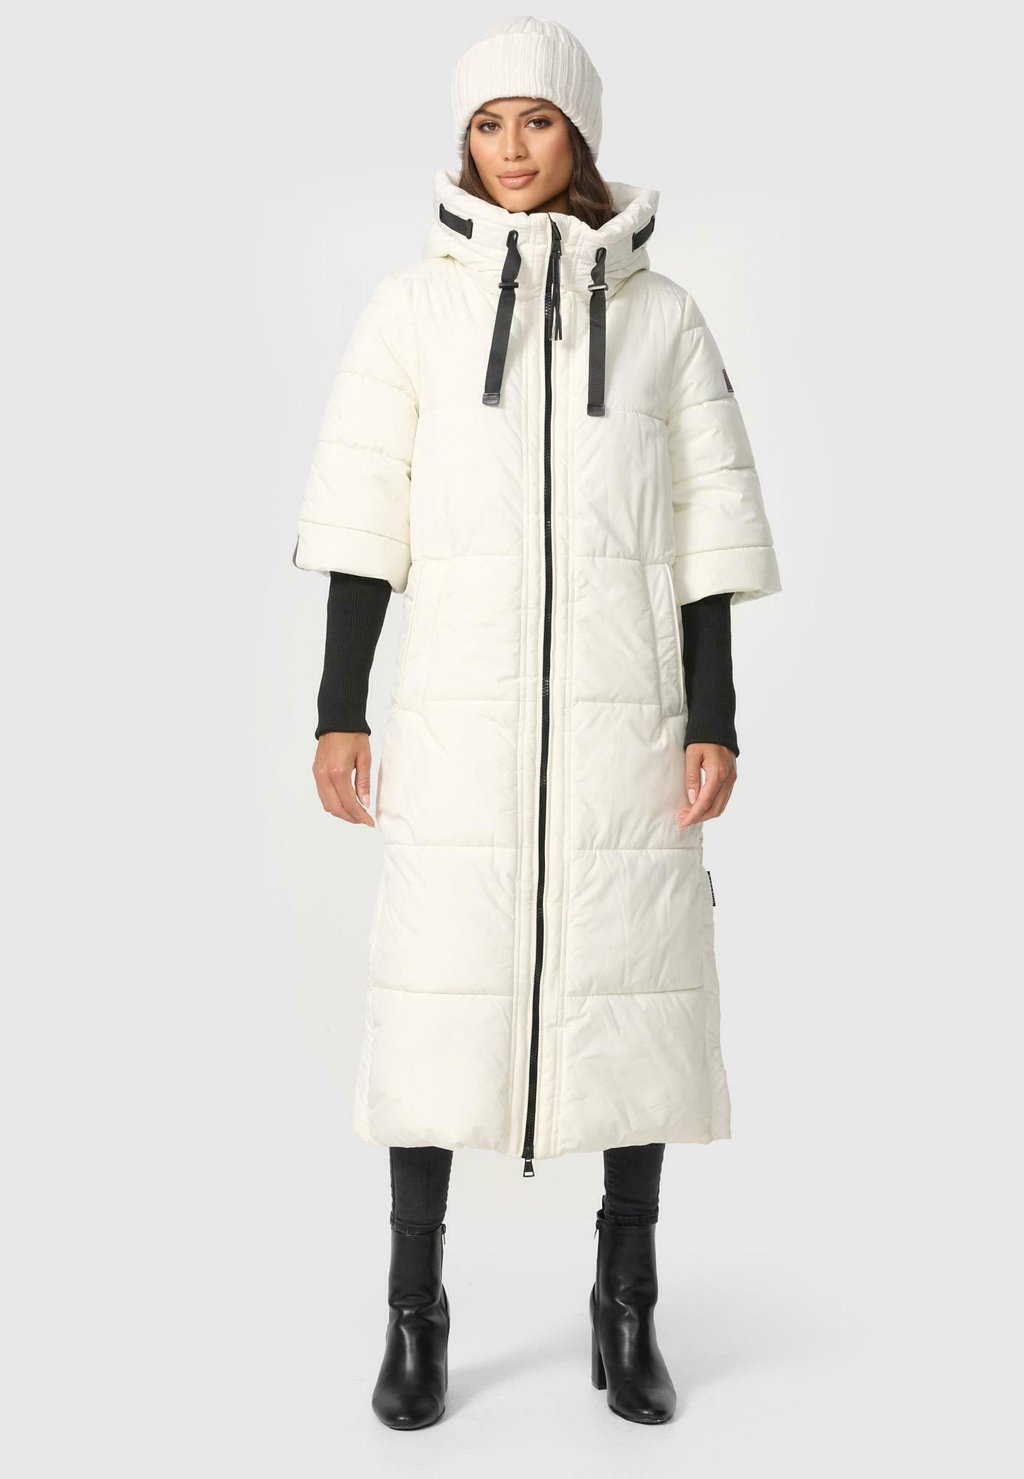 Зимнее пальто Ciao Miau Xiv Navahoo, цвет offwhite пальто зимнее для девочки ciao kids collection ck0252 цвет розовый 14 лет